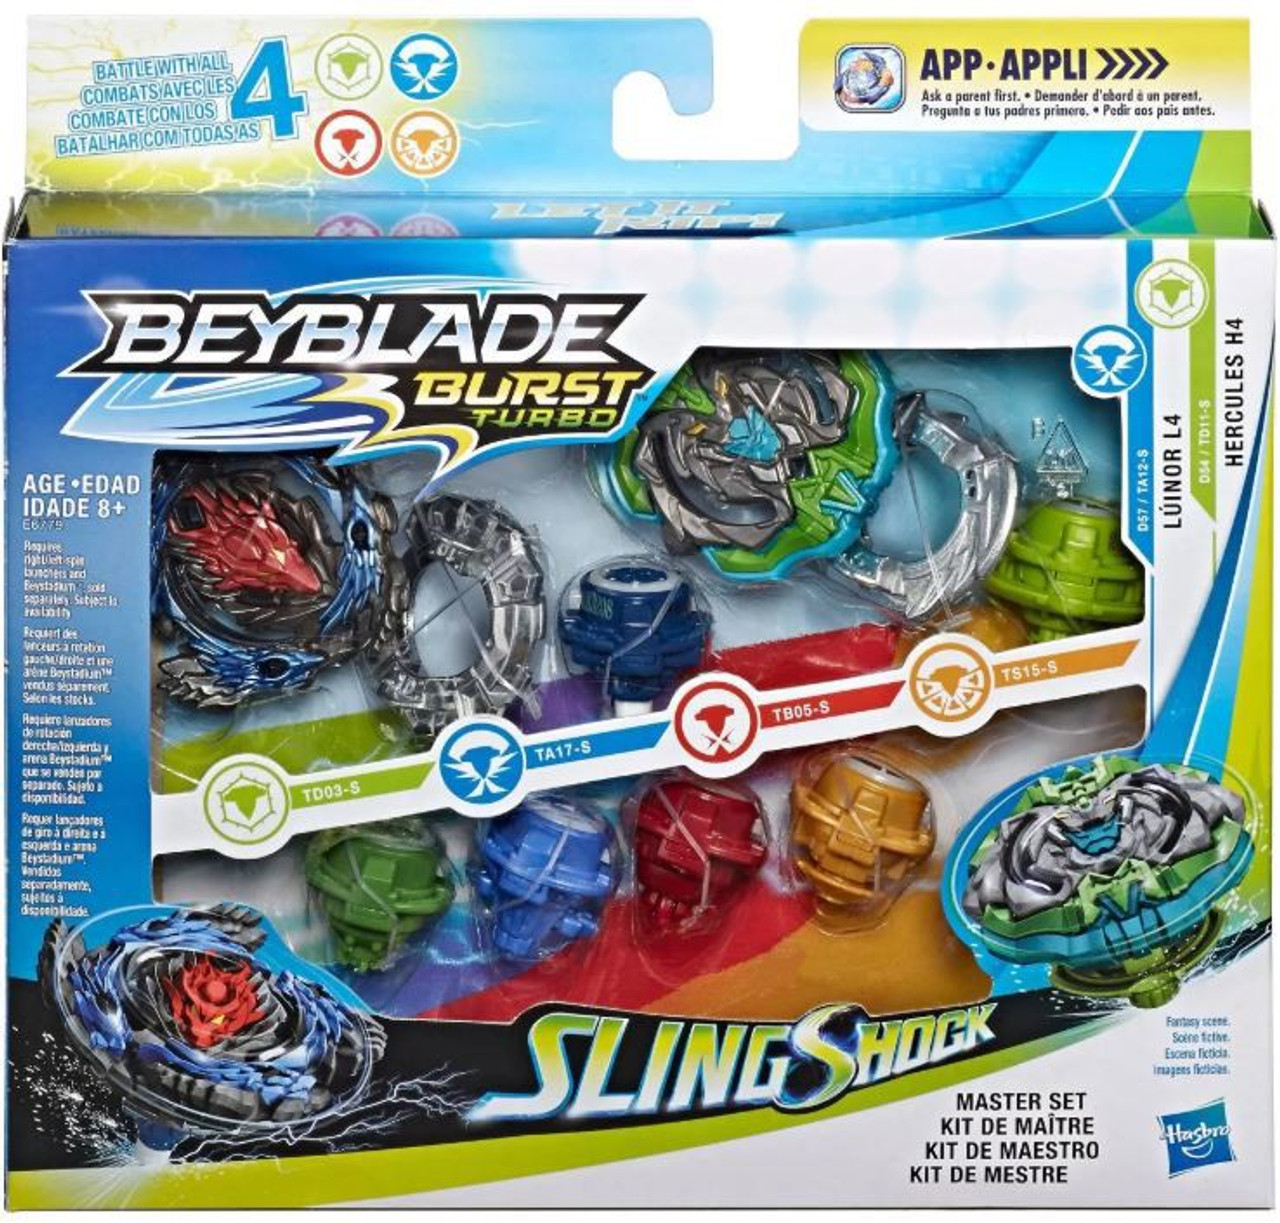 Beyblade Burst Turbo Slingshock Master Set Pack Hasbro Toys Toywiz